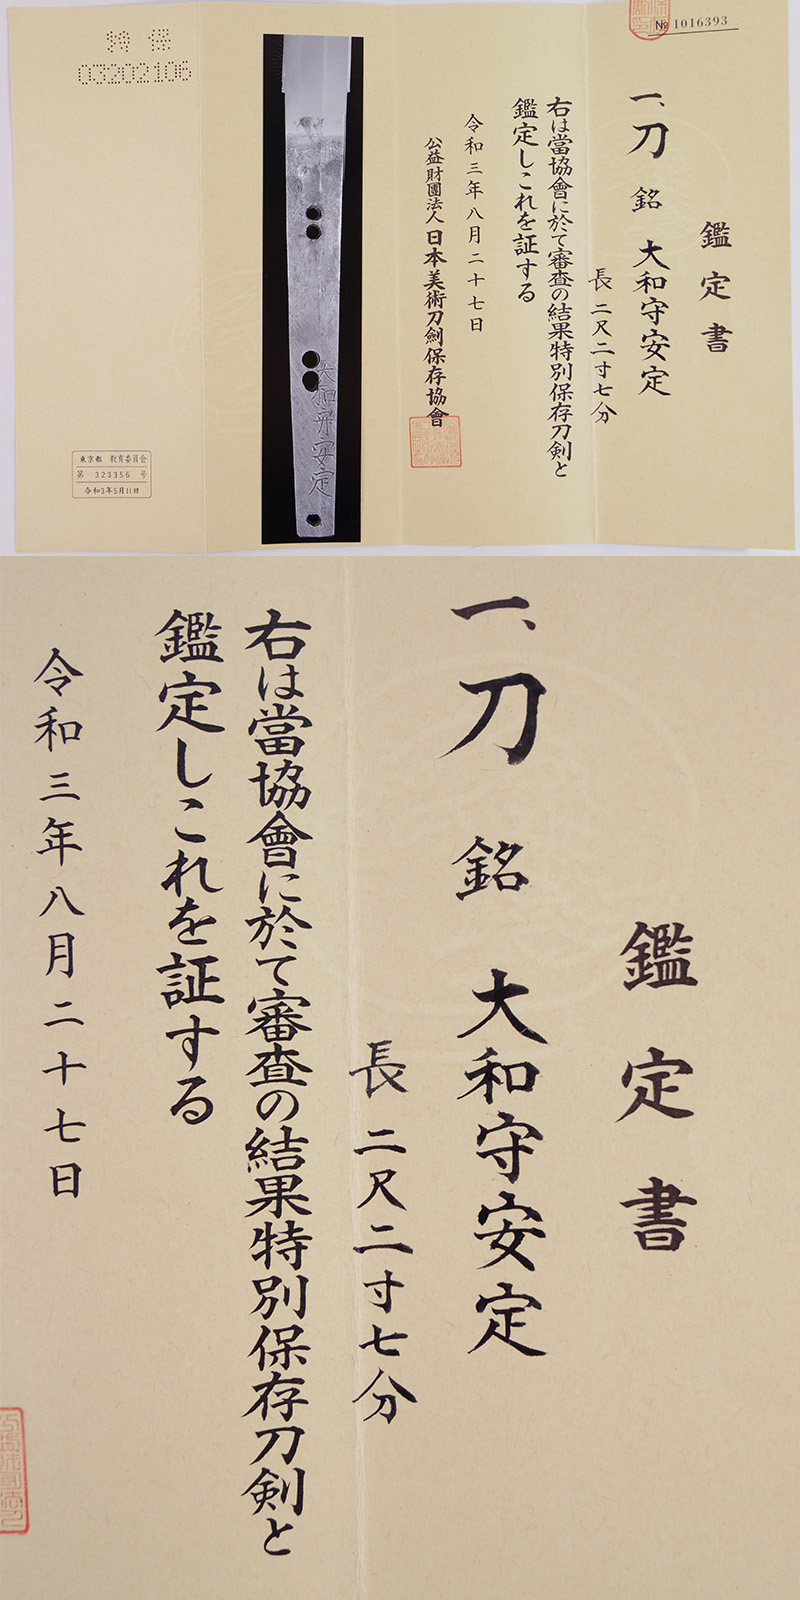 刀　大和守安定(新刀上作) (良業物) Picture of Certificate